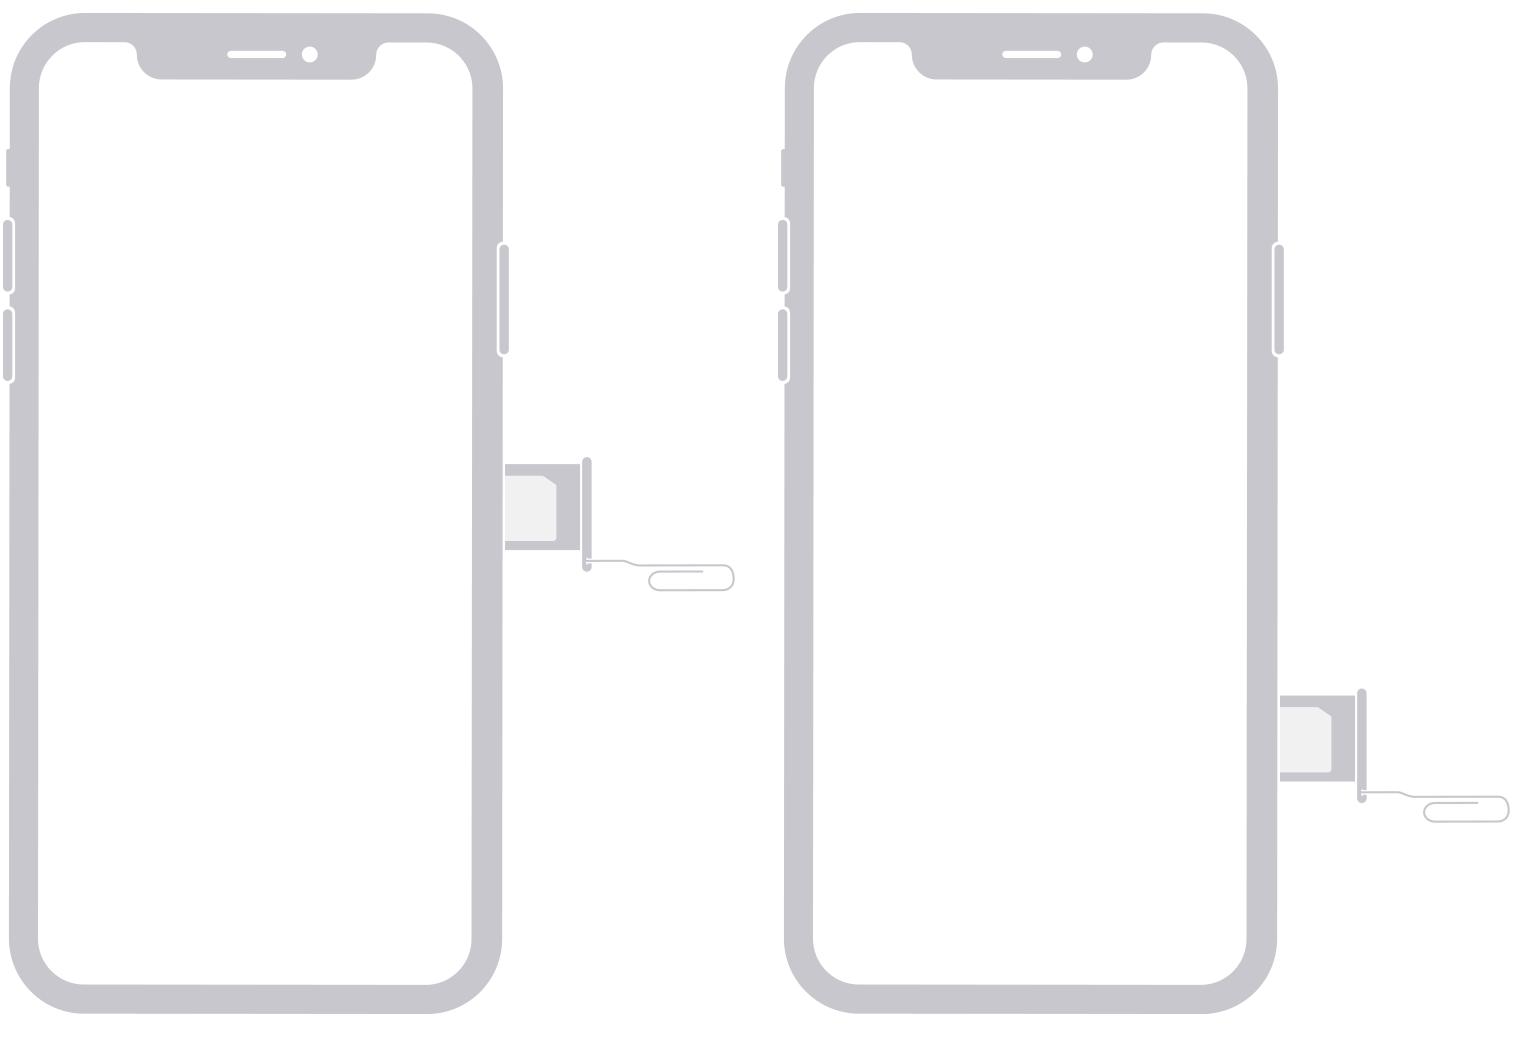 Hình ảnh minh họa SIM nằm ở cạnh bên phải của iPhone